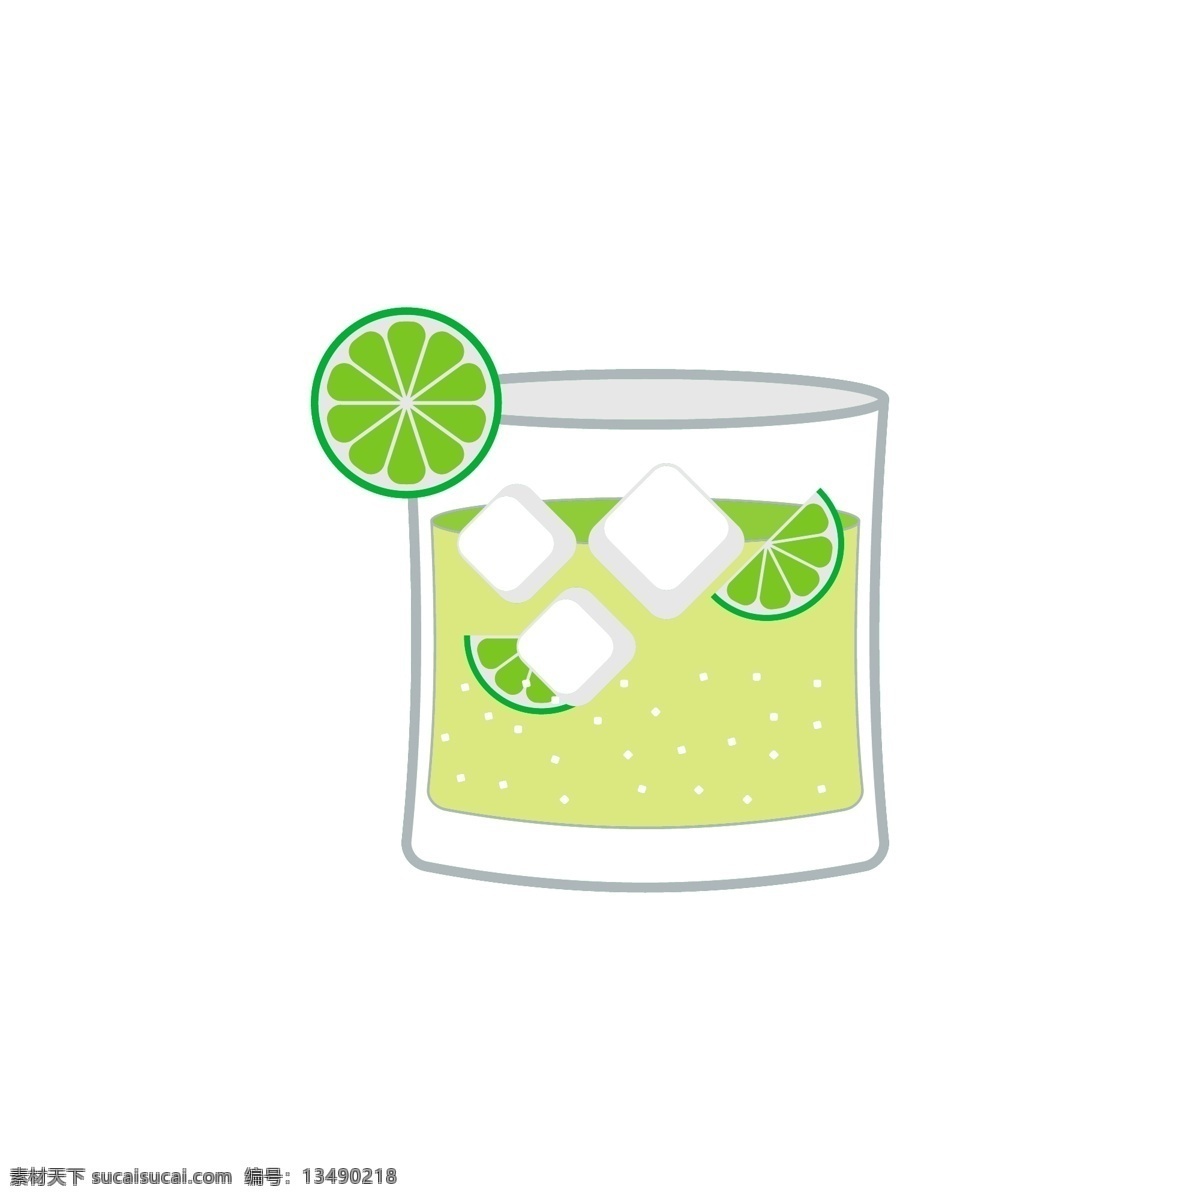 柠檬饮料图标 饮料 饮料图标 矢量素材 杯子 高脚杯 图标 图标设计 唯美 手绘 手绘饮料 冷饮 汽水 果汁 柠檬